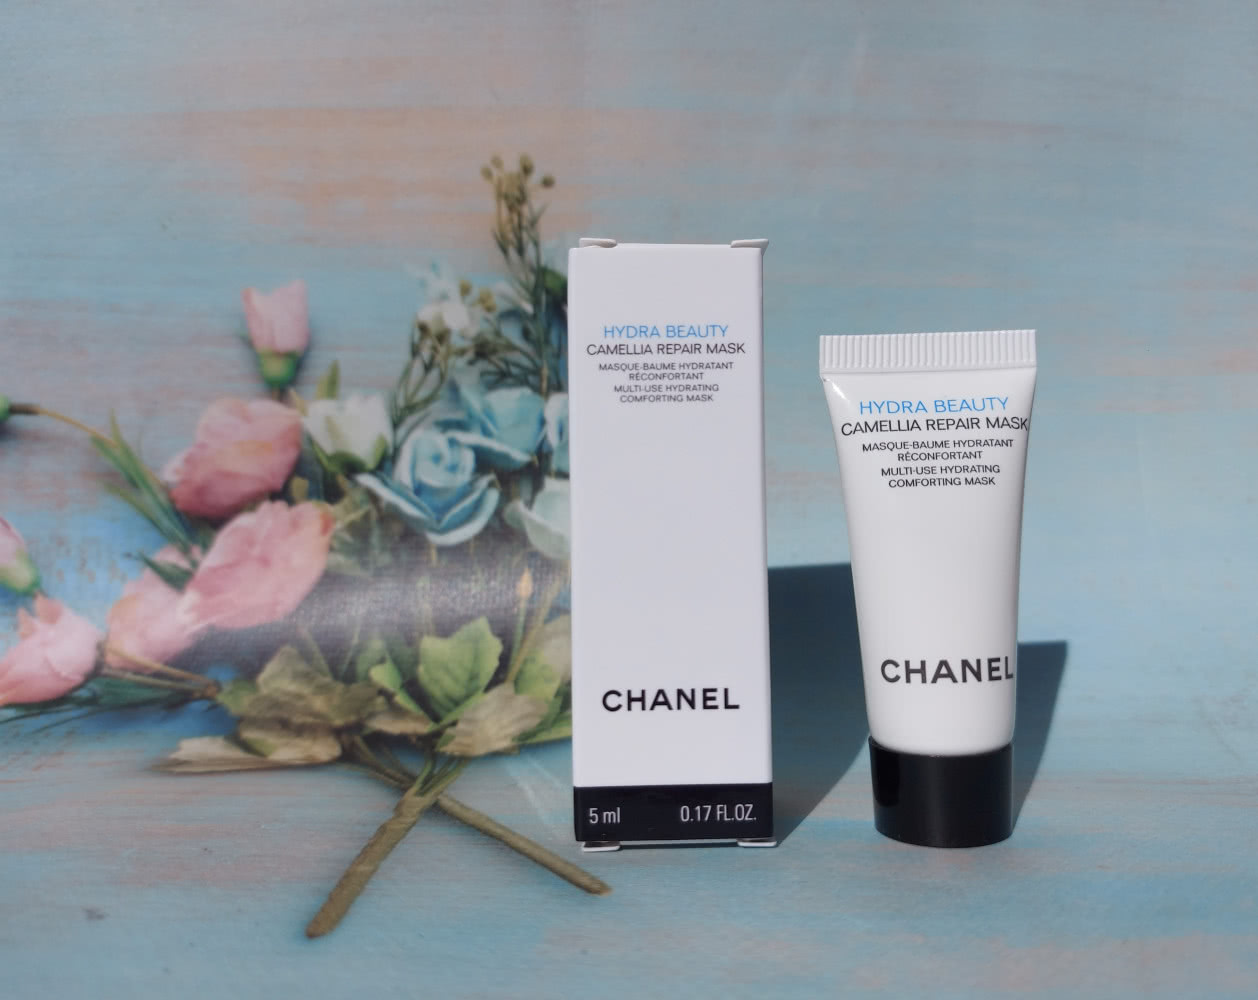 Chanel hydra beauty camellia repair mask — цена 150 грн в каталоге Маски  для лица ✓ Купить товары для красоты и здоровья по доступной цене на Шафе